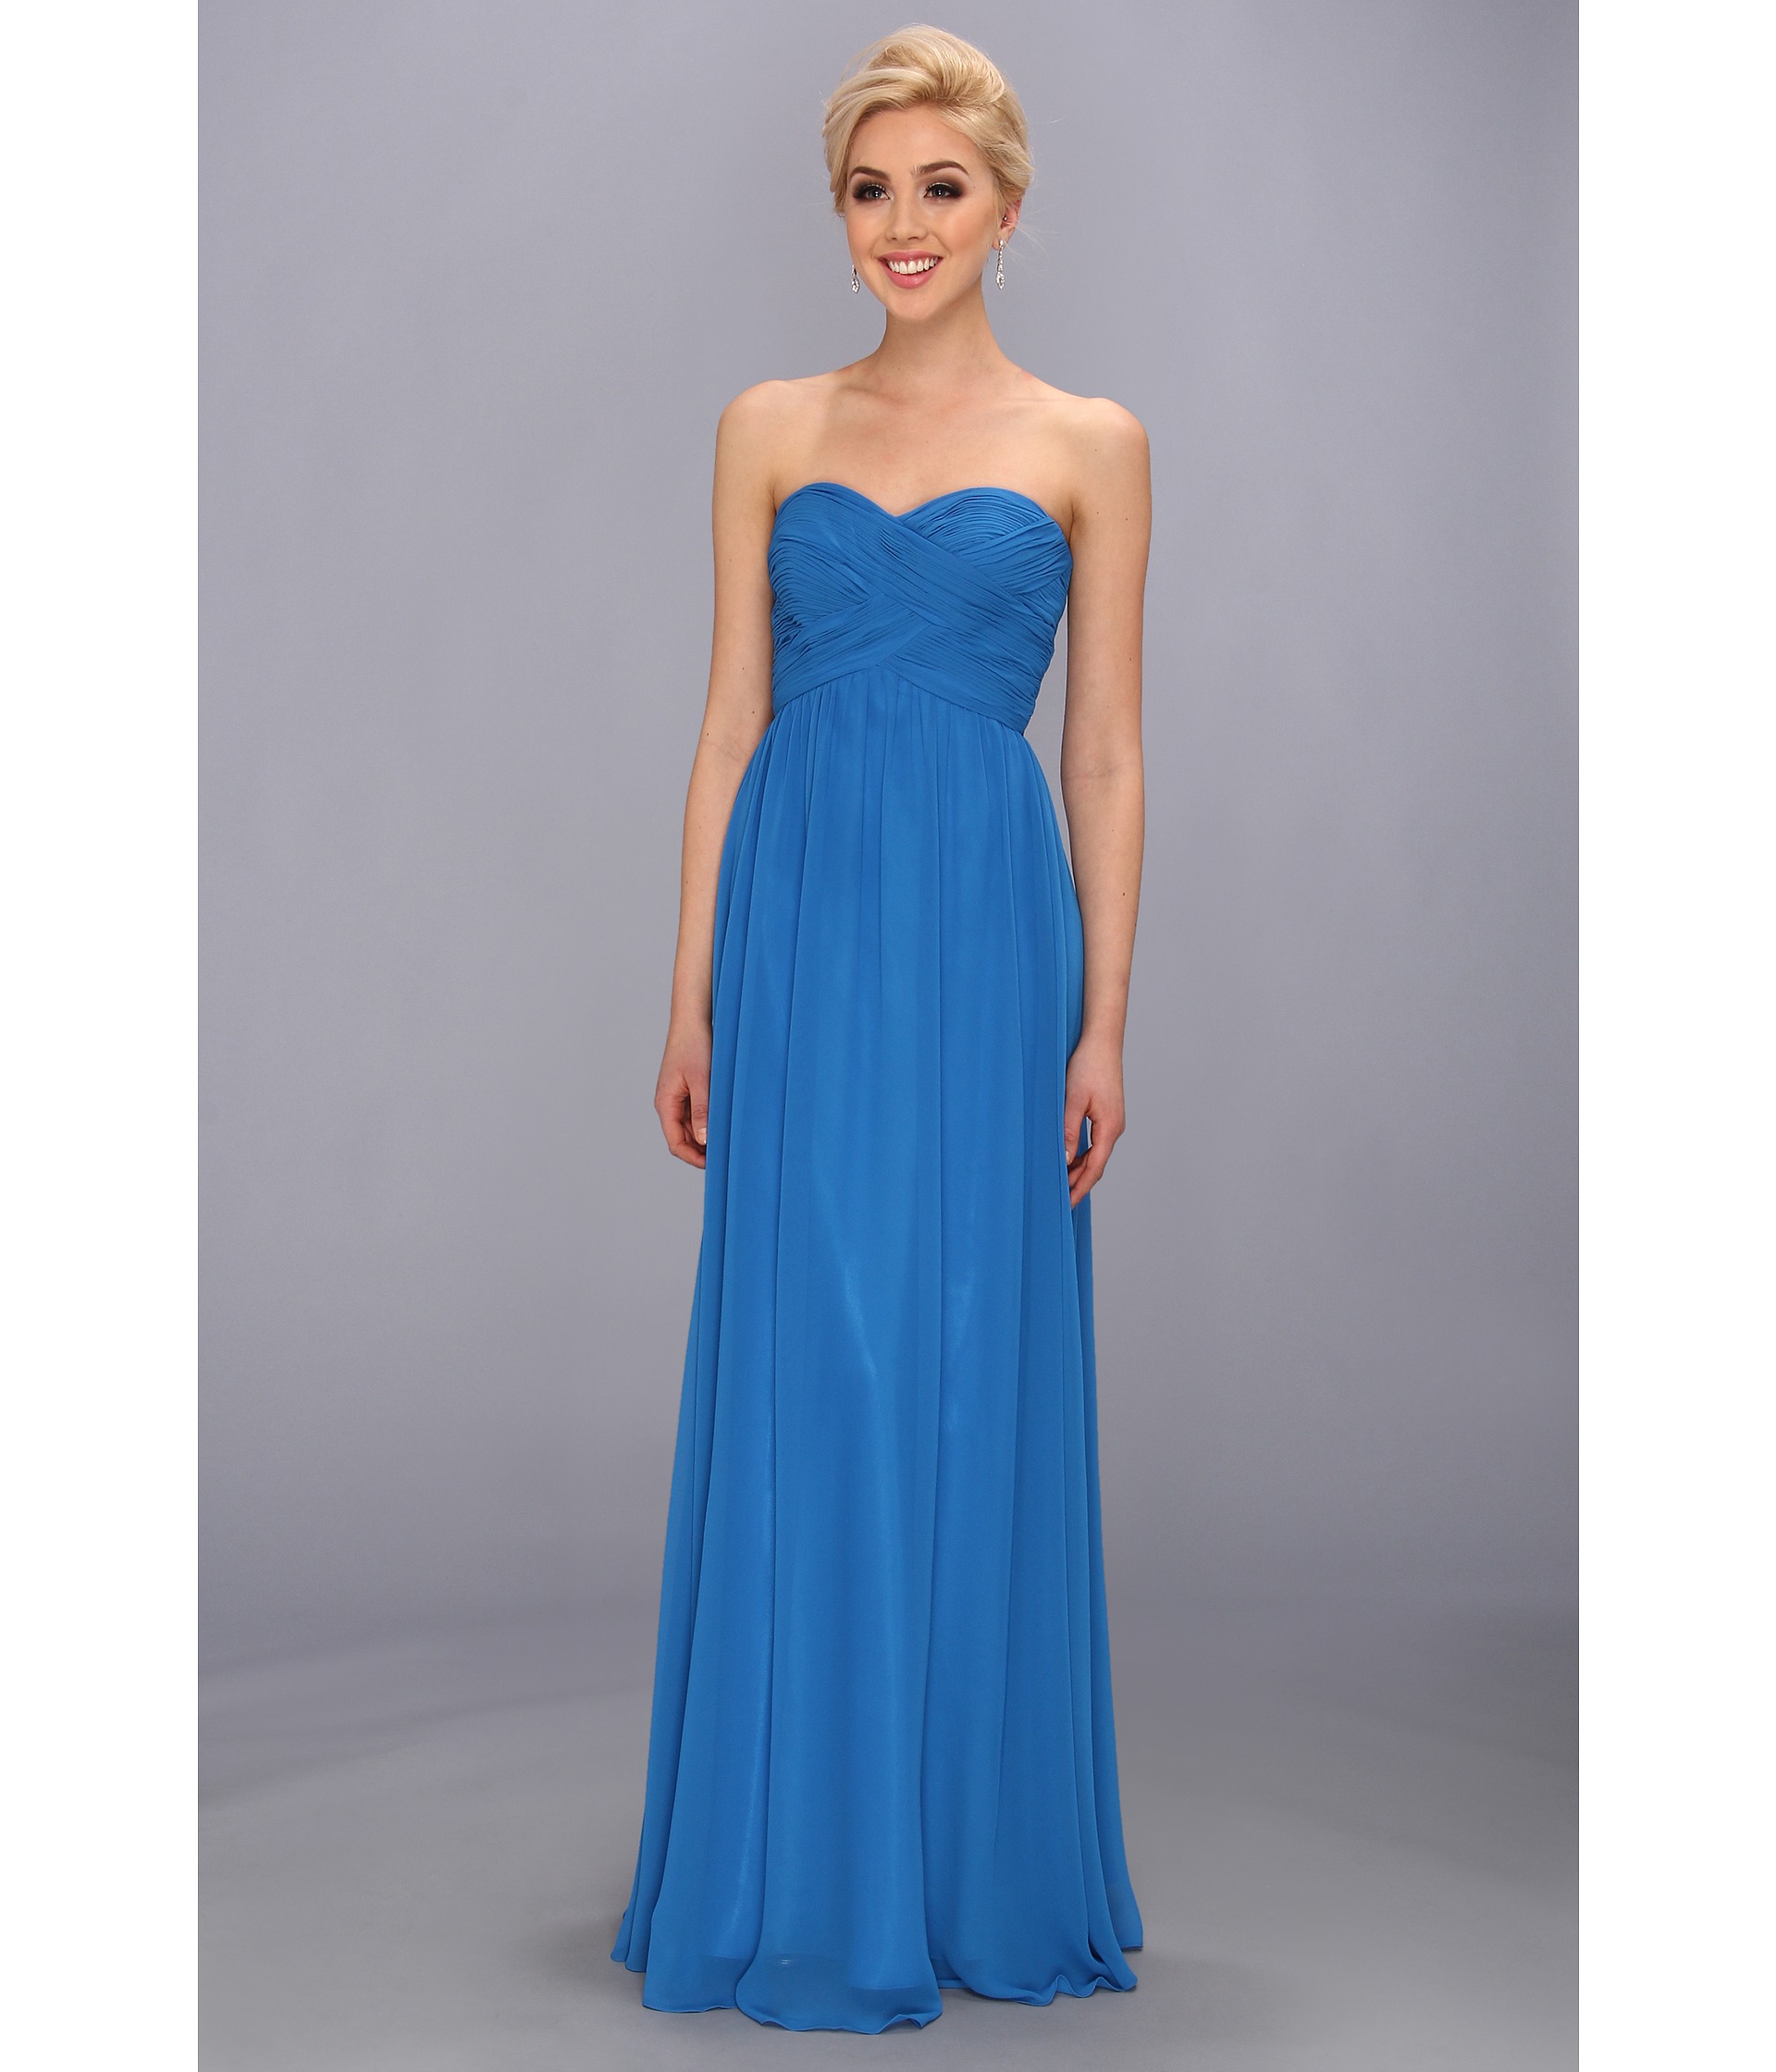 Faviana Strapless Sweetheart Chiffon Dress 7338 Turquoise Stone, Women